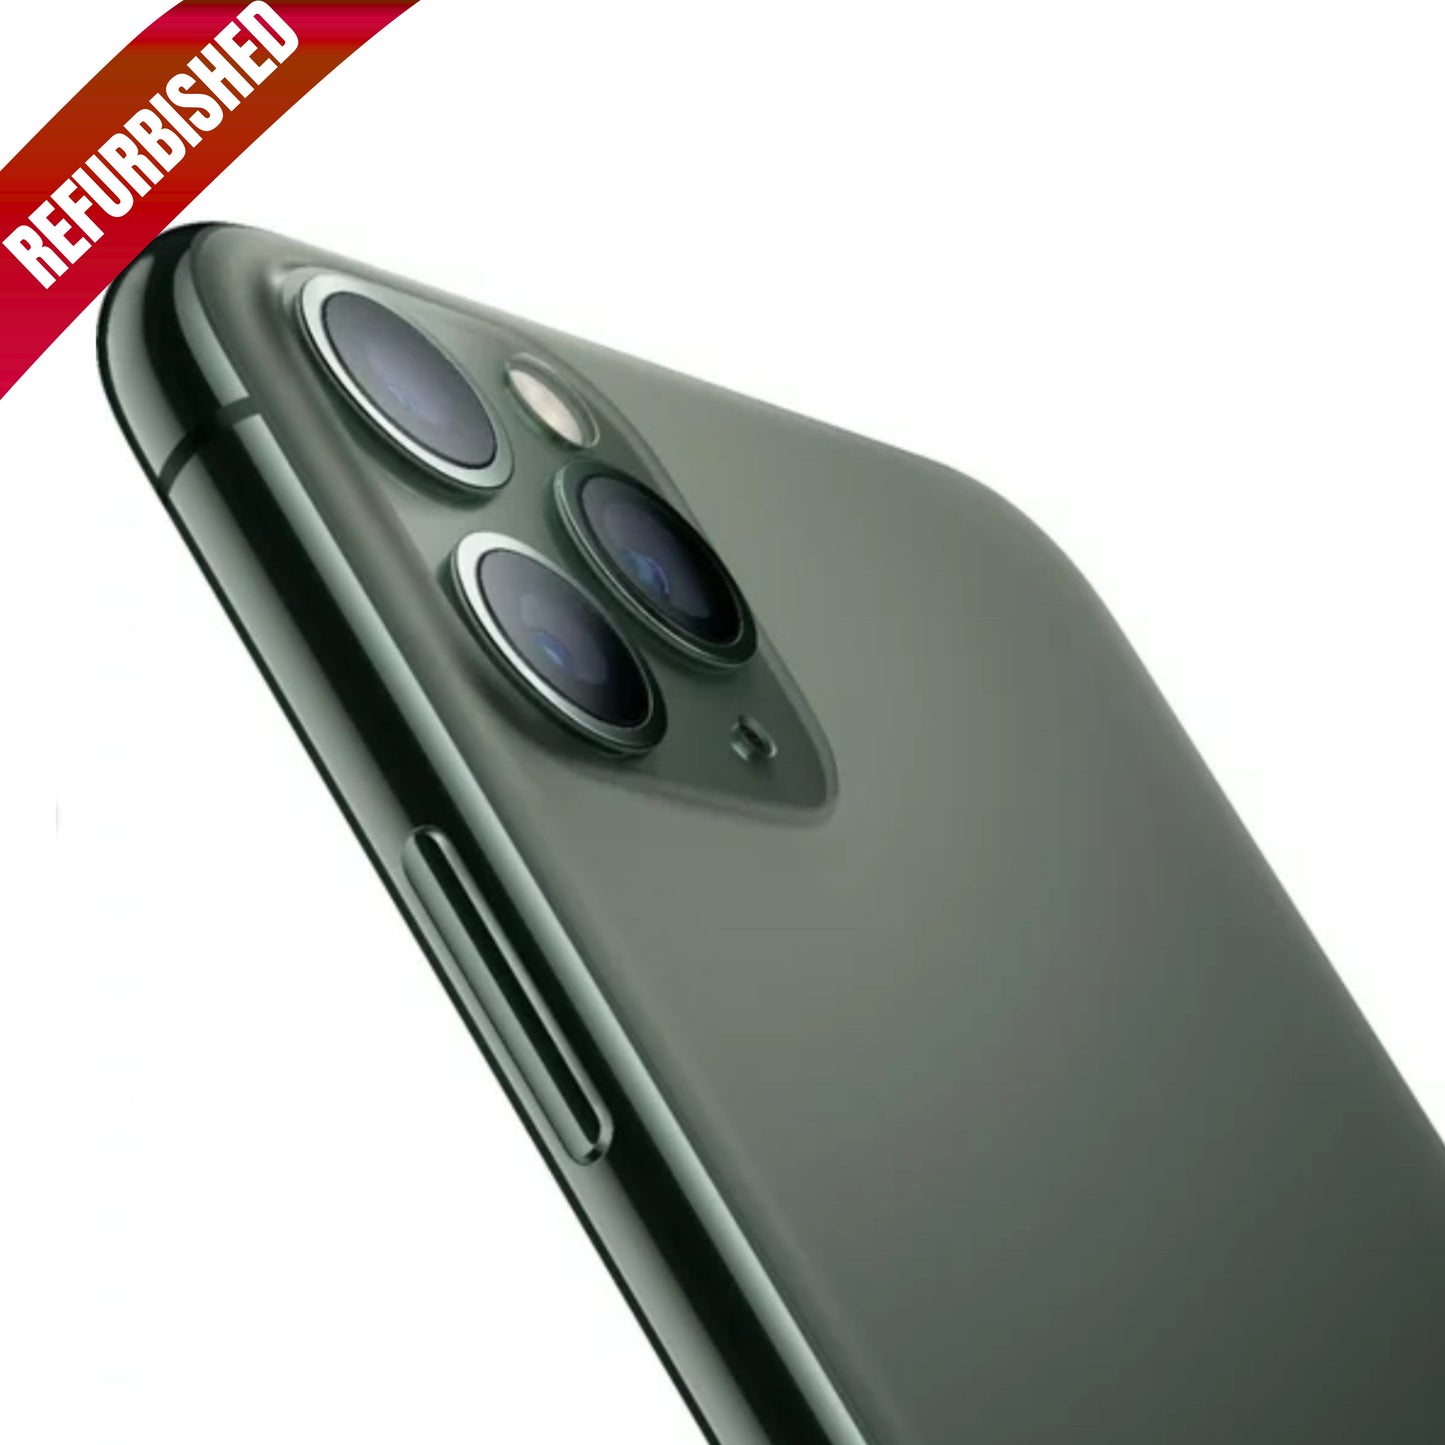 iPhone 11 Pro Max Midnight Green 256GB (Unlocked) Refurbished